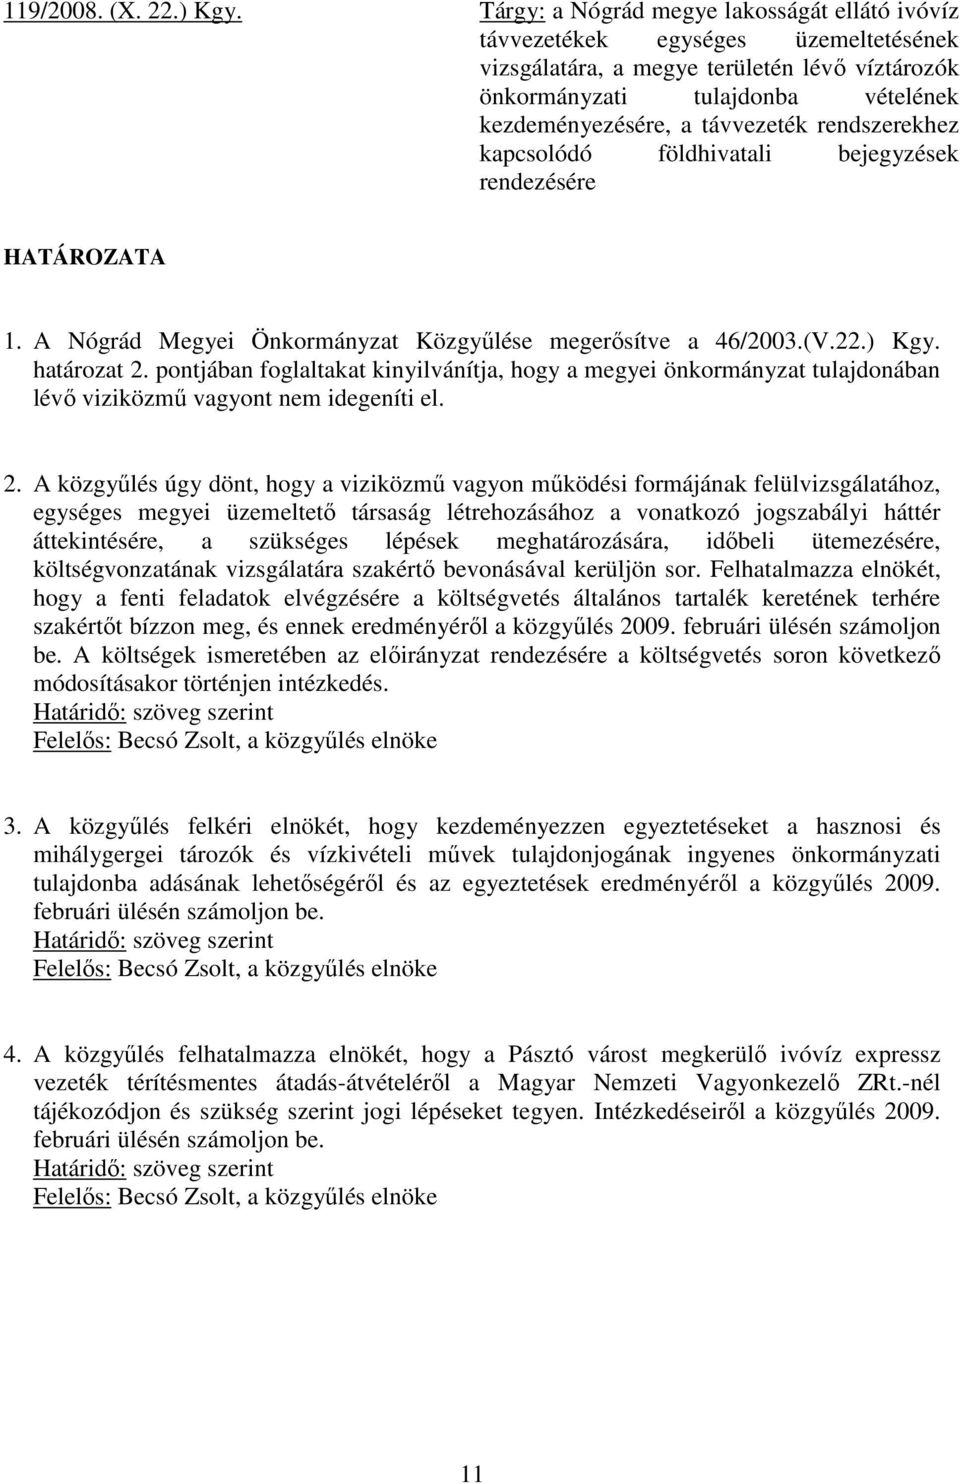 rendszerekhez kapcsolódó földhivatali bejegyzések rendezésére HATÁROZATA 1. A Nógrád Megyei Önkormányzat Közgyőlése megerısítve a 46/2003.(V.22.) Kgy. határozat 2.